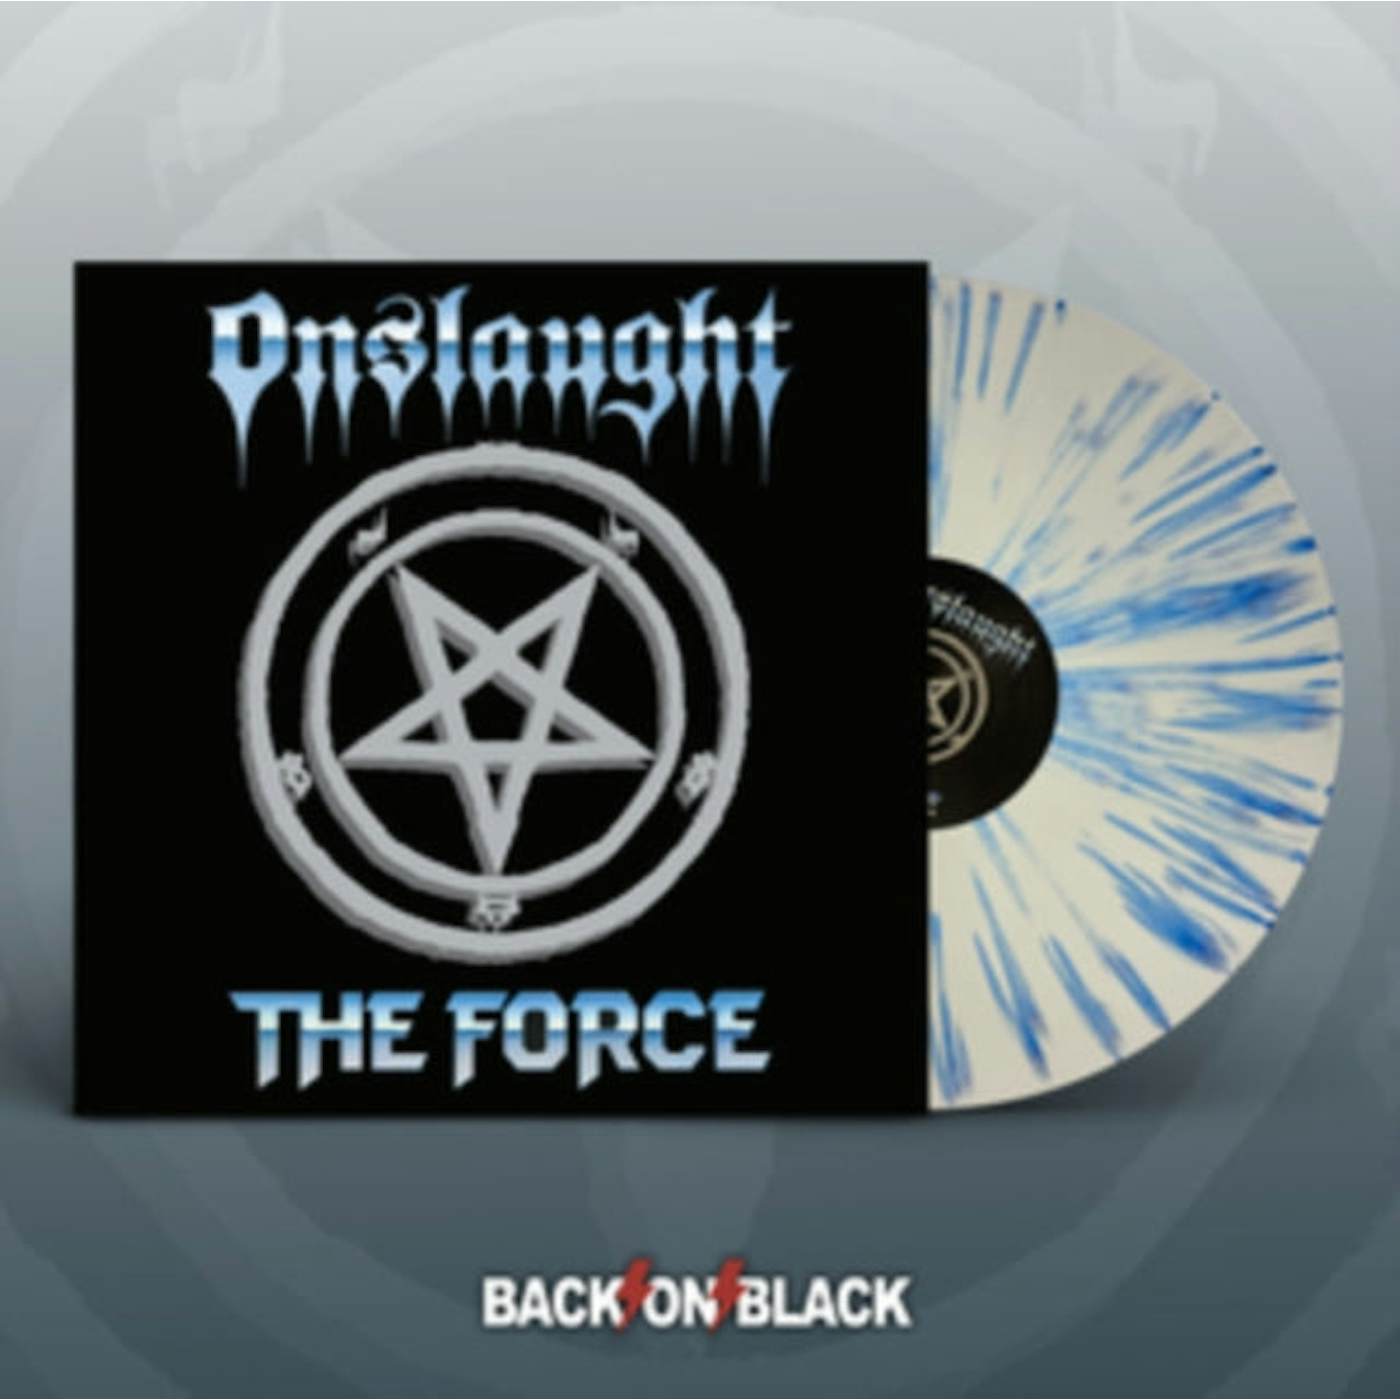 Onslaught LP - The Force (White / Blue Splatter Vinyl)